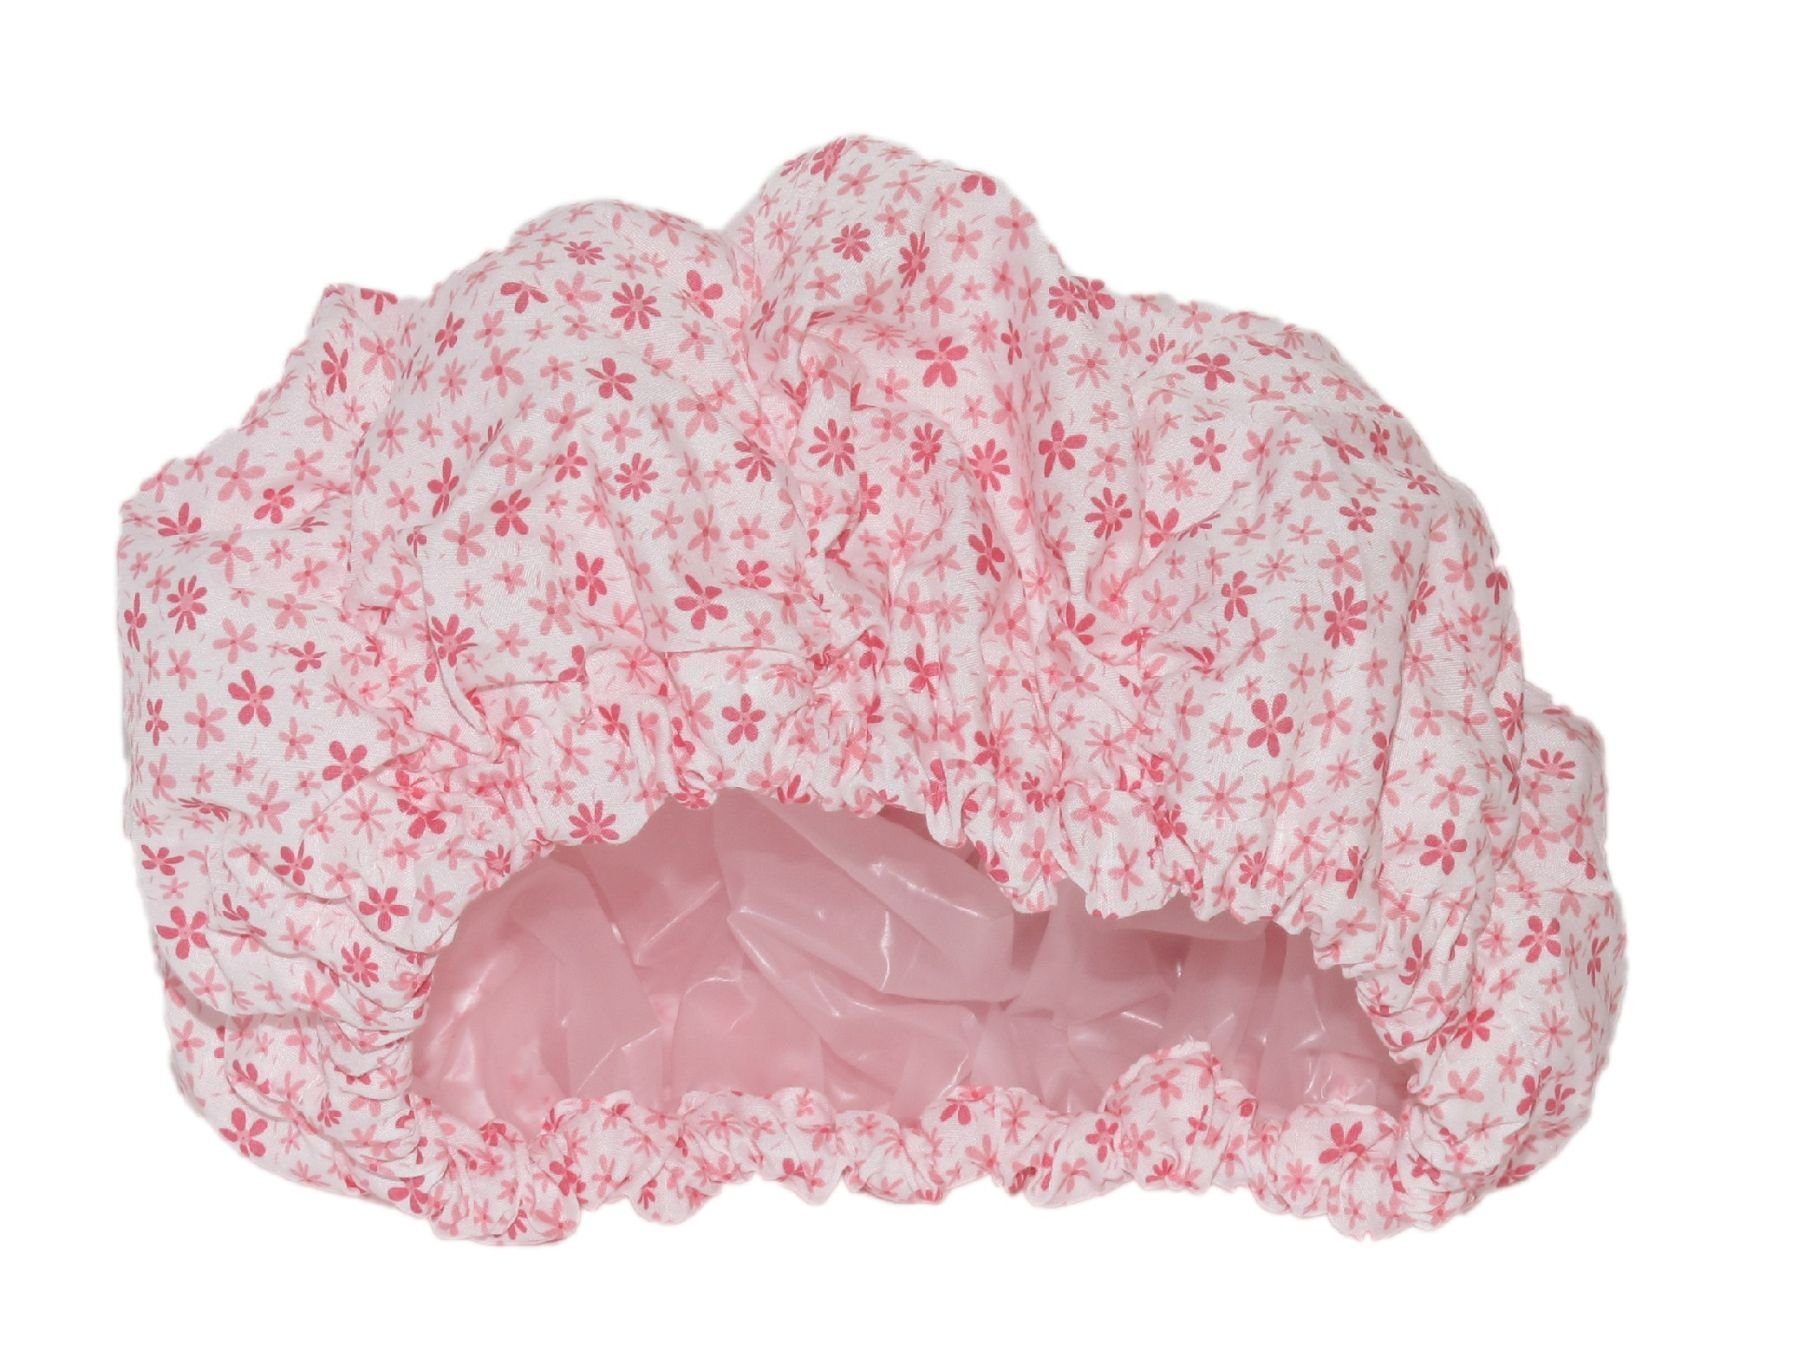 Fashy Duschhaube Fashy - Duschhaube weiß Blumen rosa 3628 Stoffhaube Folieninnenhaube